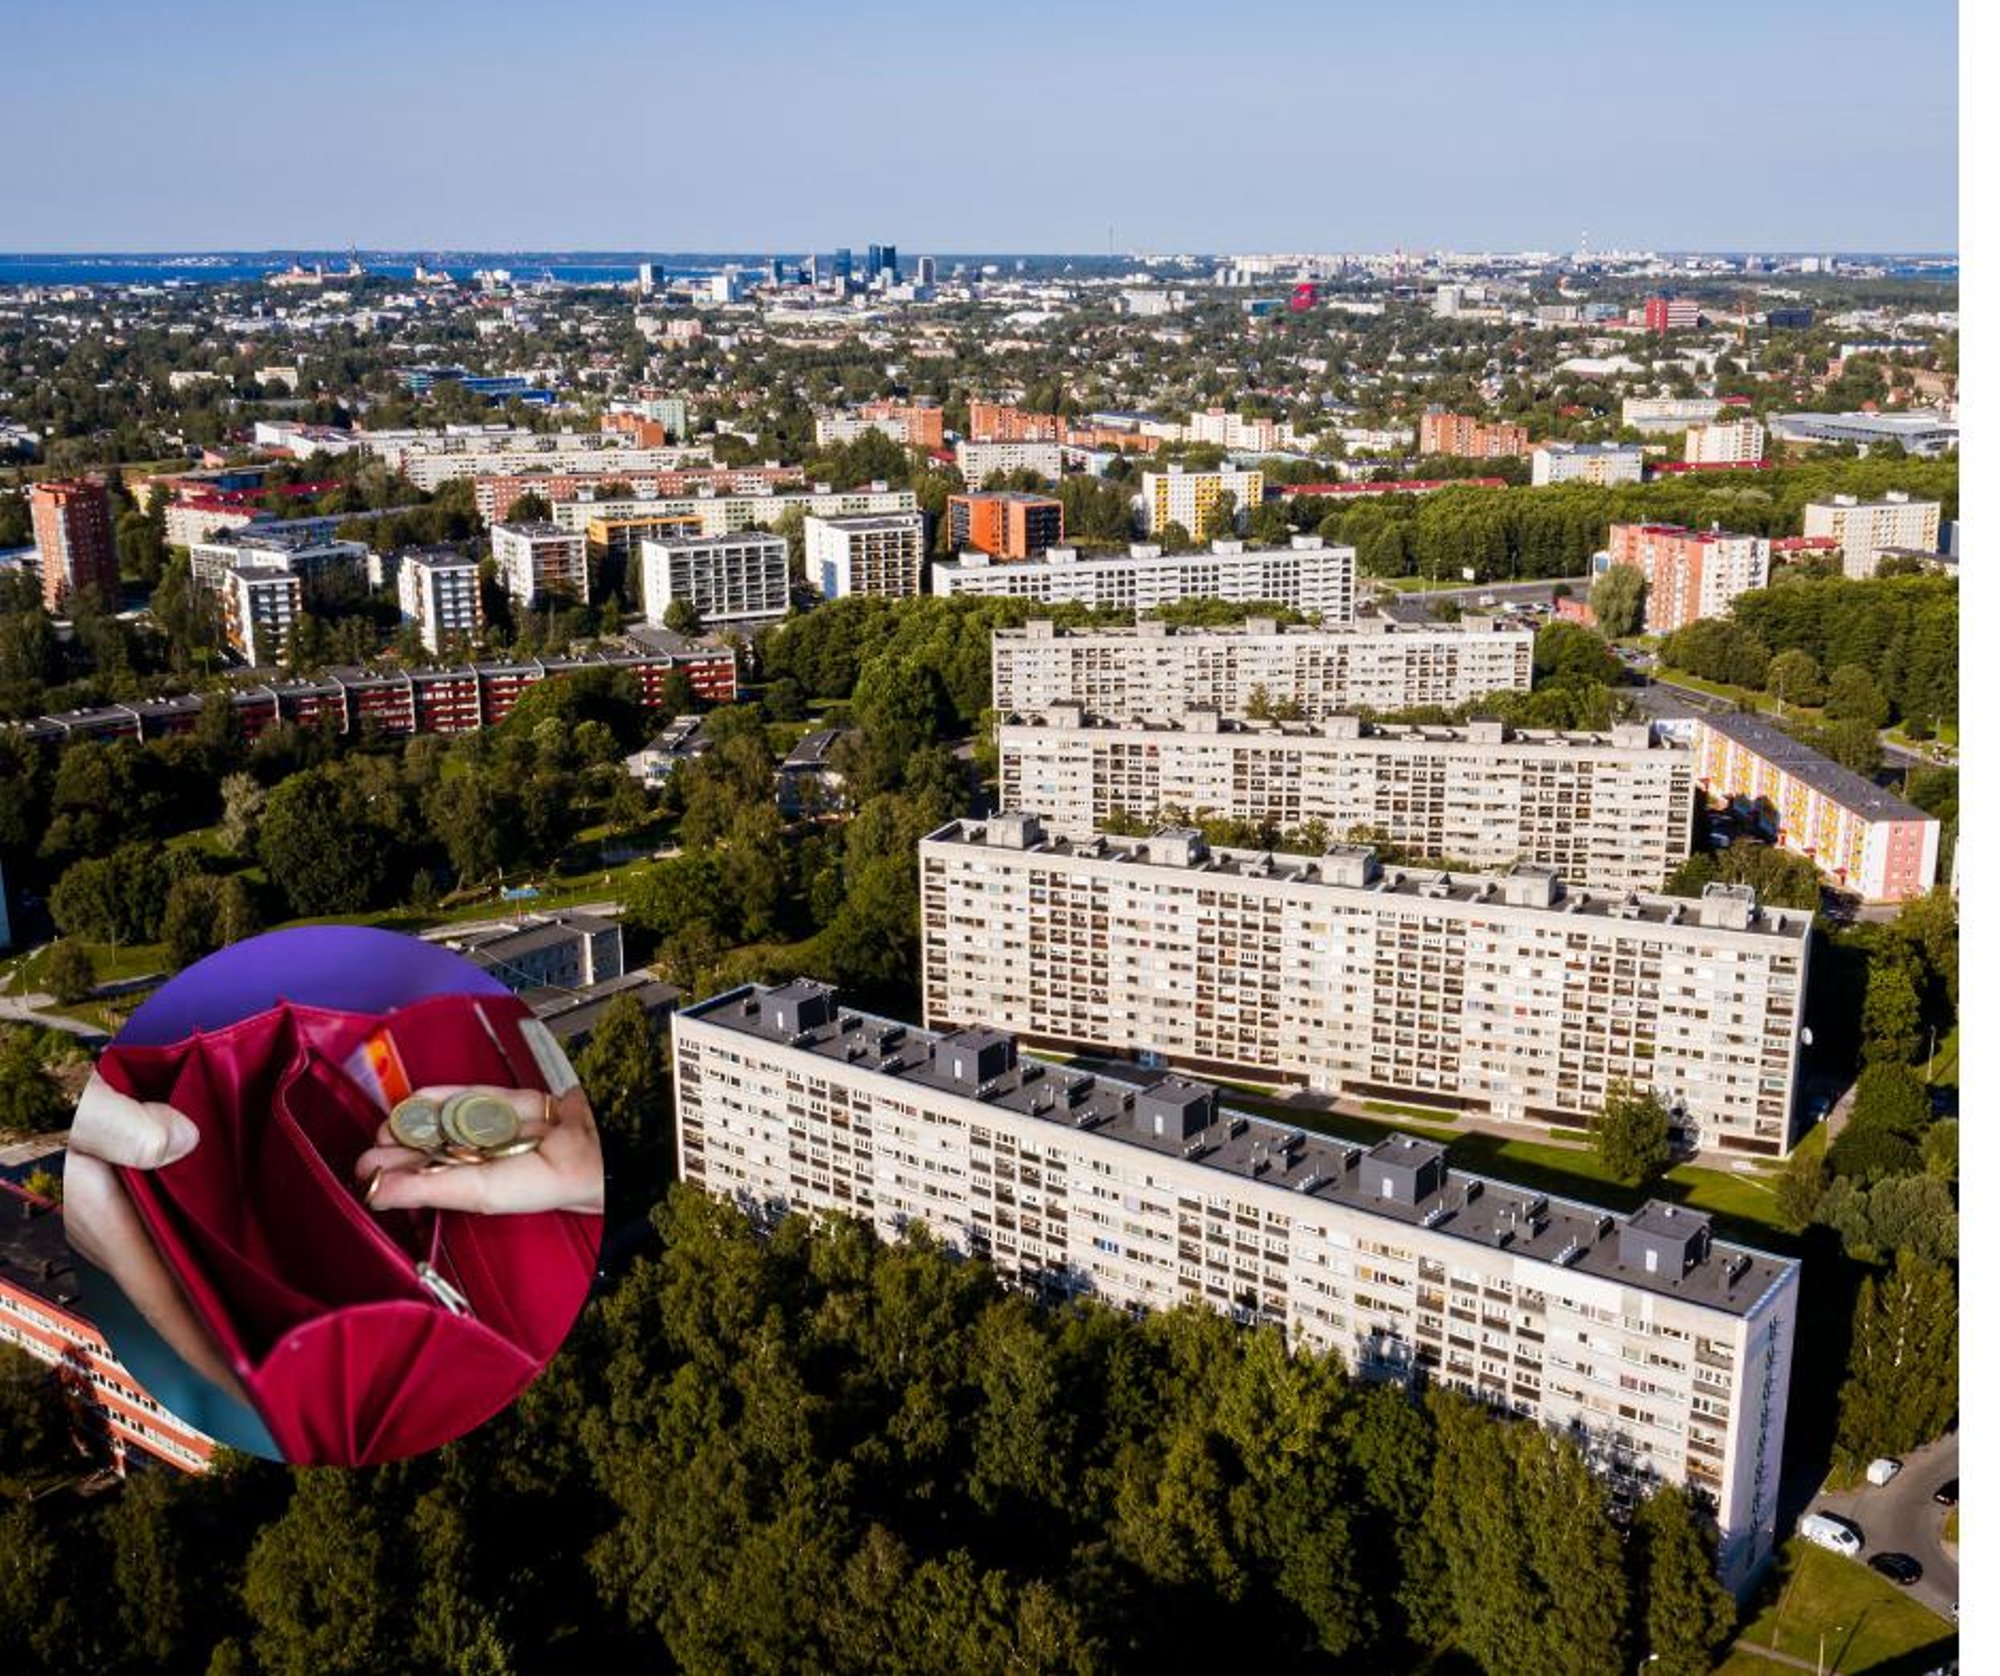 Parem minek on üürikorteritel Tallinna linnaosades, kus on odavam hinnatase, näiteks Mustamäel.